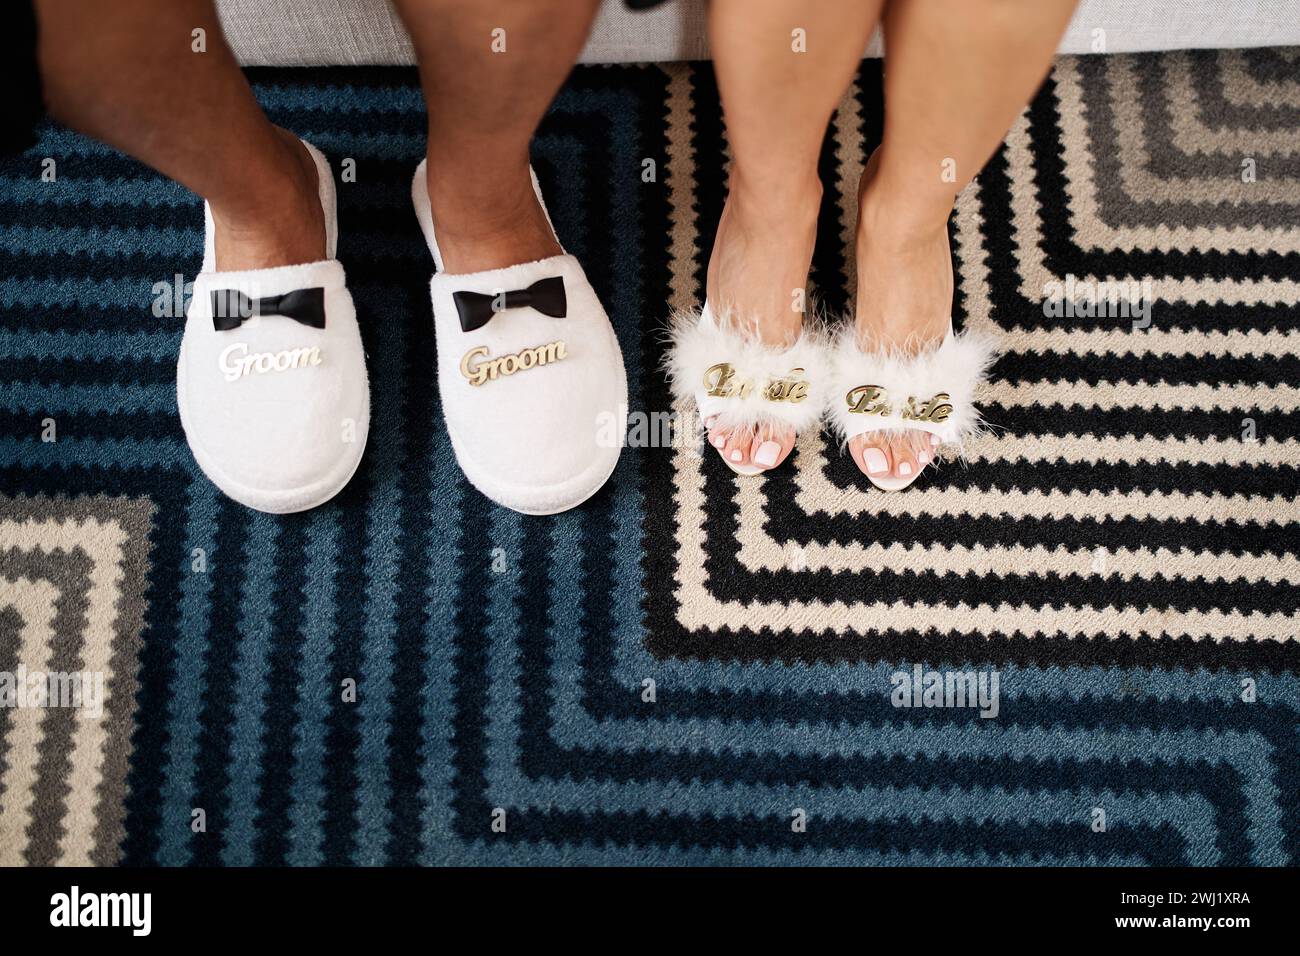 Männliche und weibliche Füße in Hausschuhen stehen auf einem gestreiften Teppich. Bildunterschrift: Bräutigam. Braut. Abgeschnitten, ohne Gesicht Stockfoto